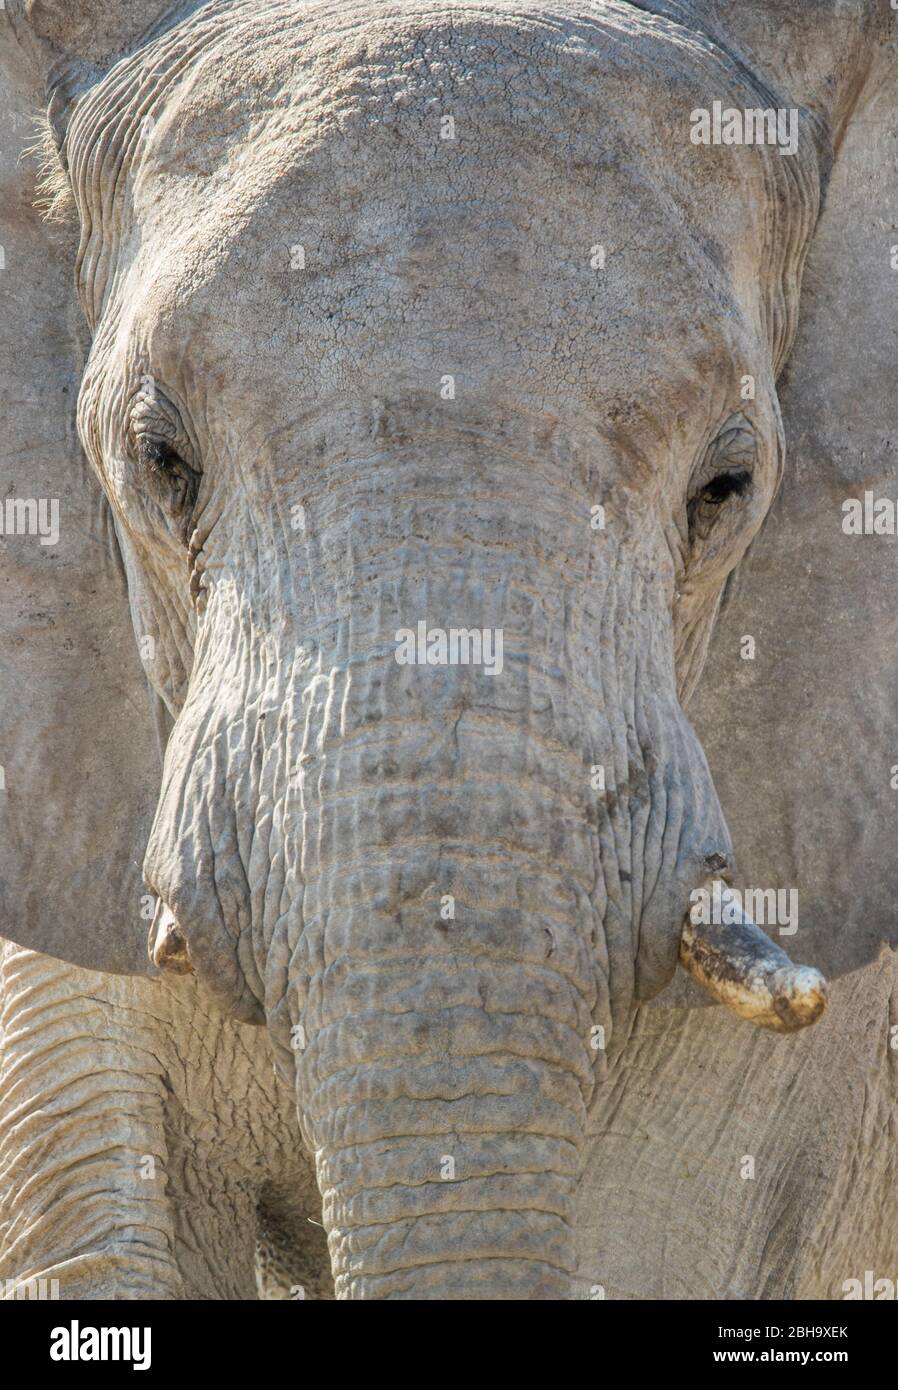 Close up of Elephants head, Etosha National Park, Namibia, Africa Stock Photo